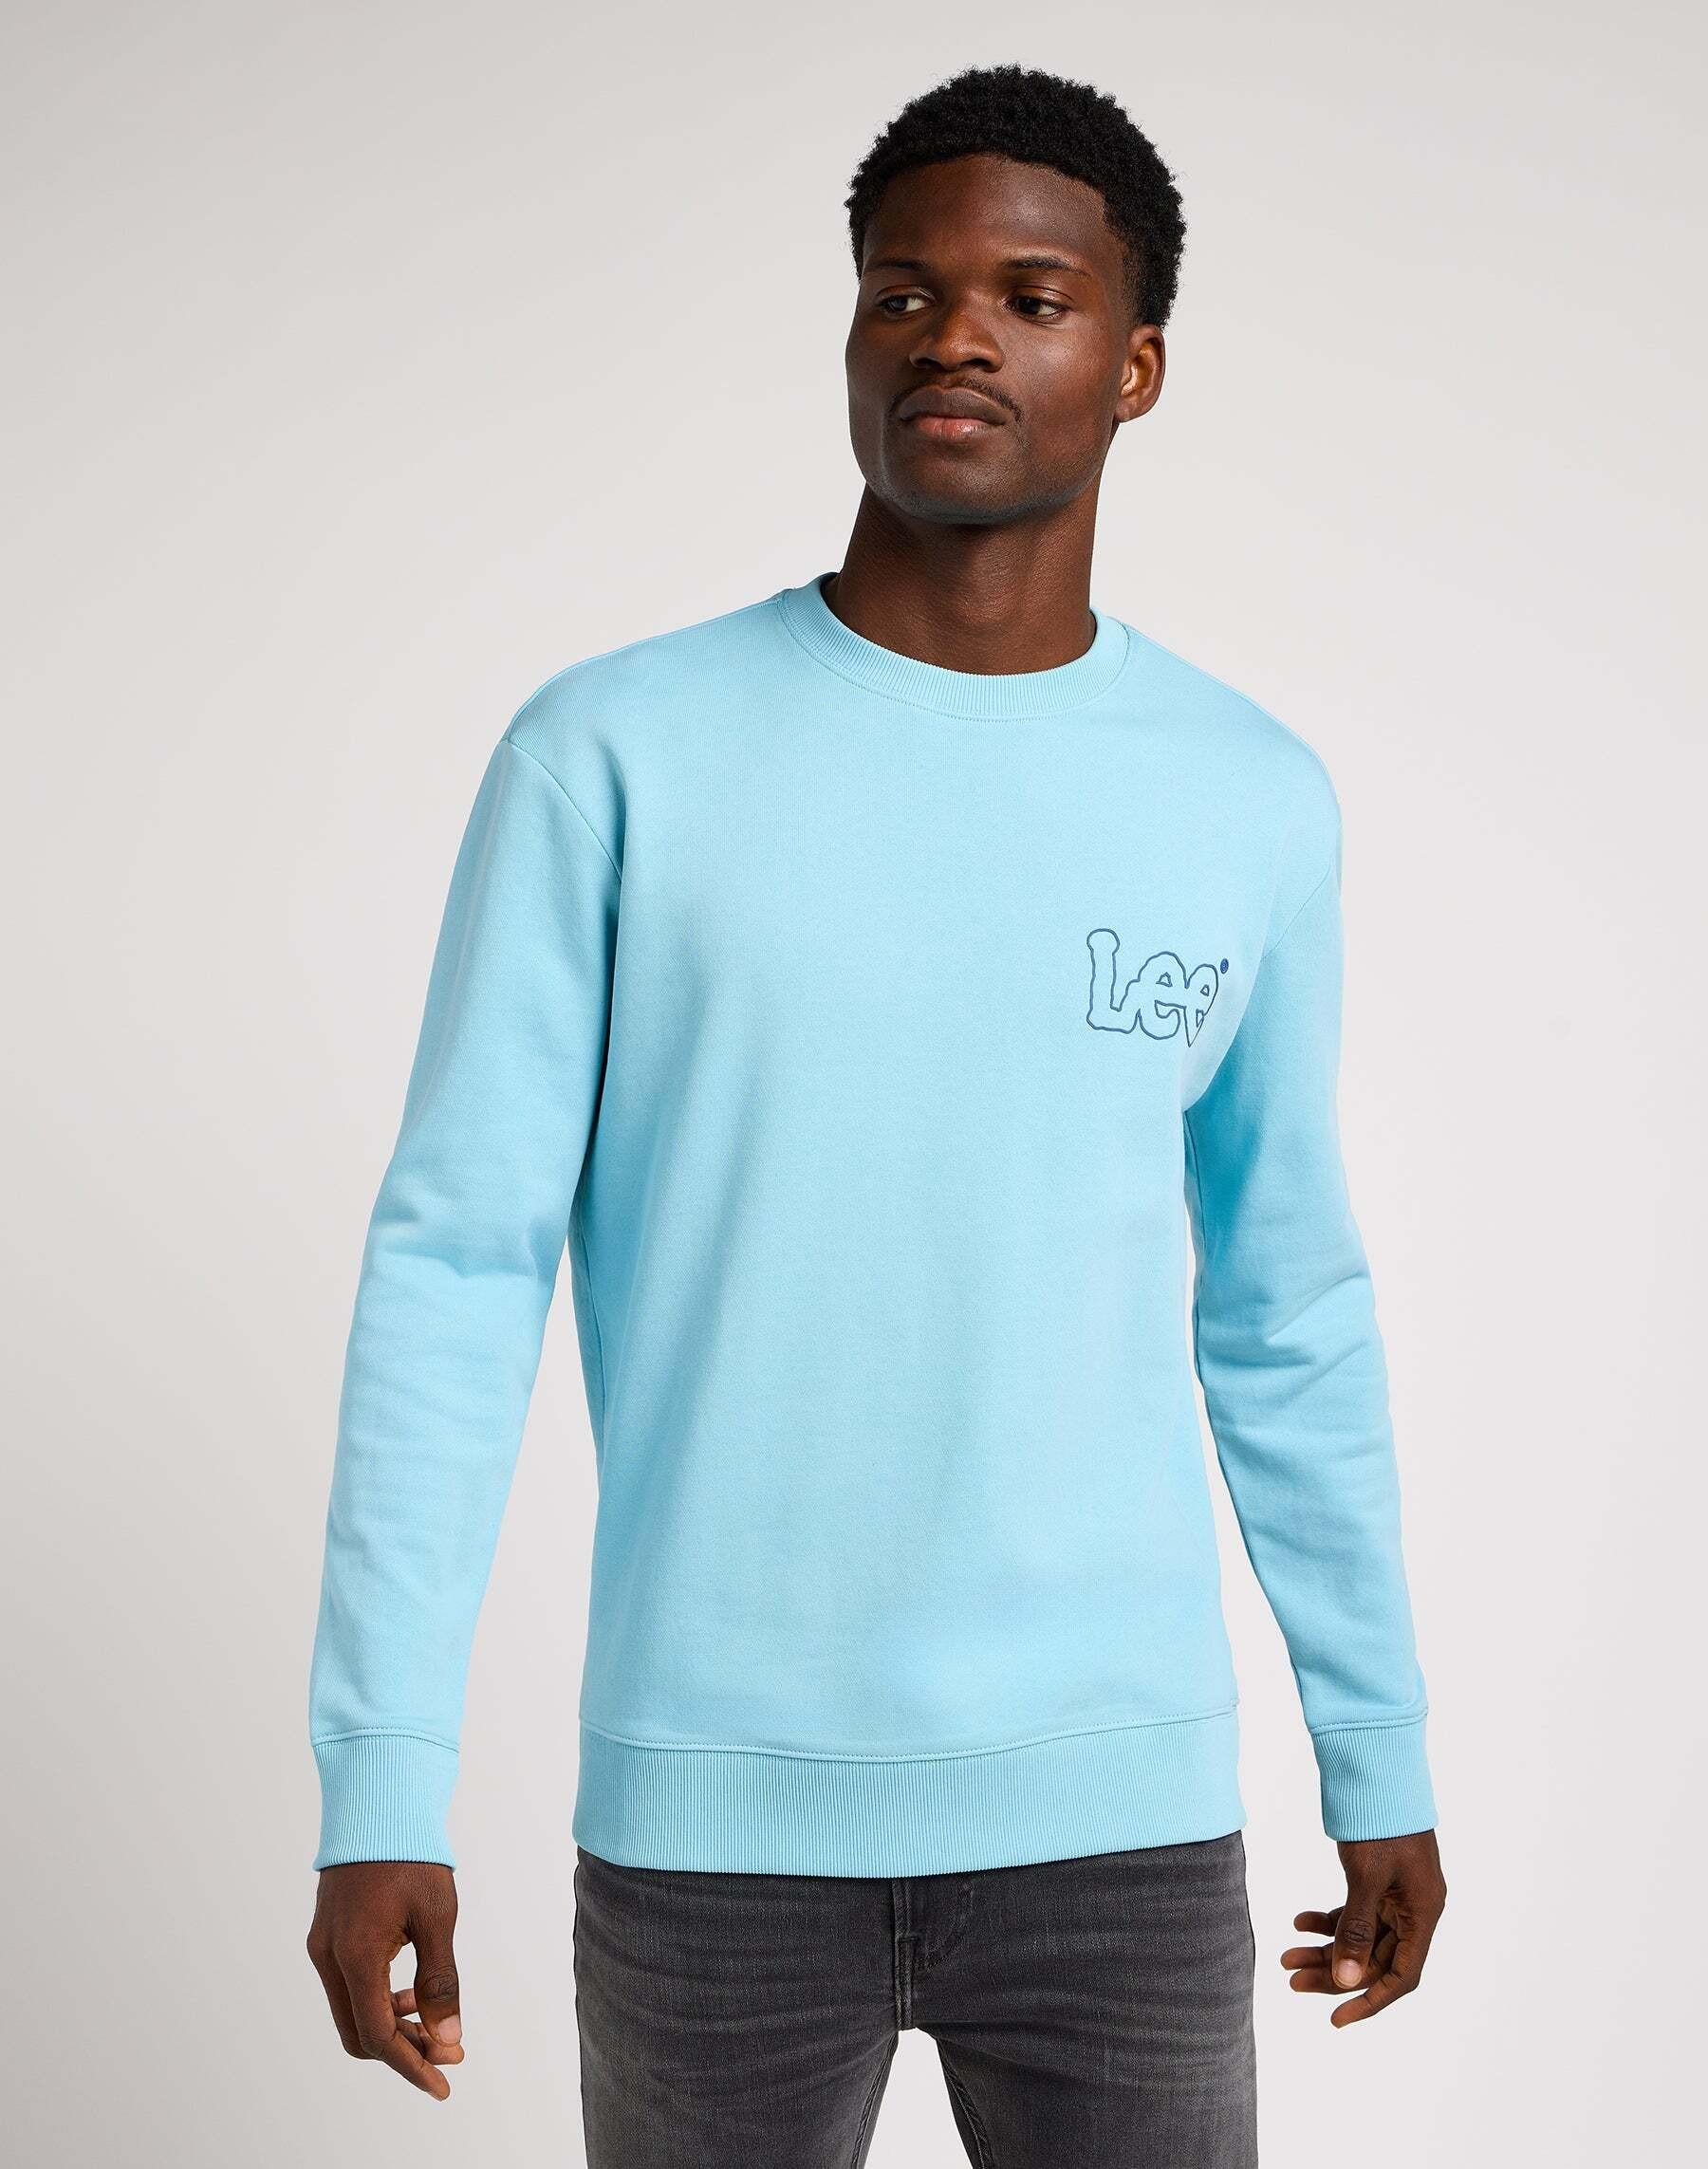 Sweatshirts Wobbly Sweater Herren Hellblau L von Lee